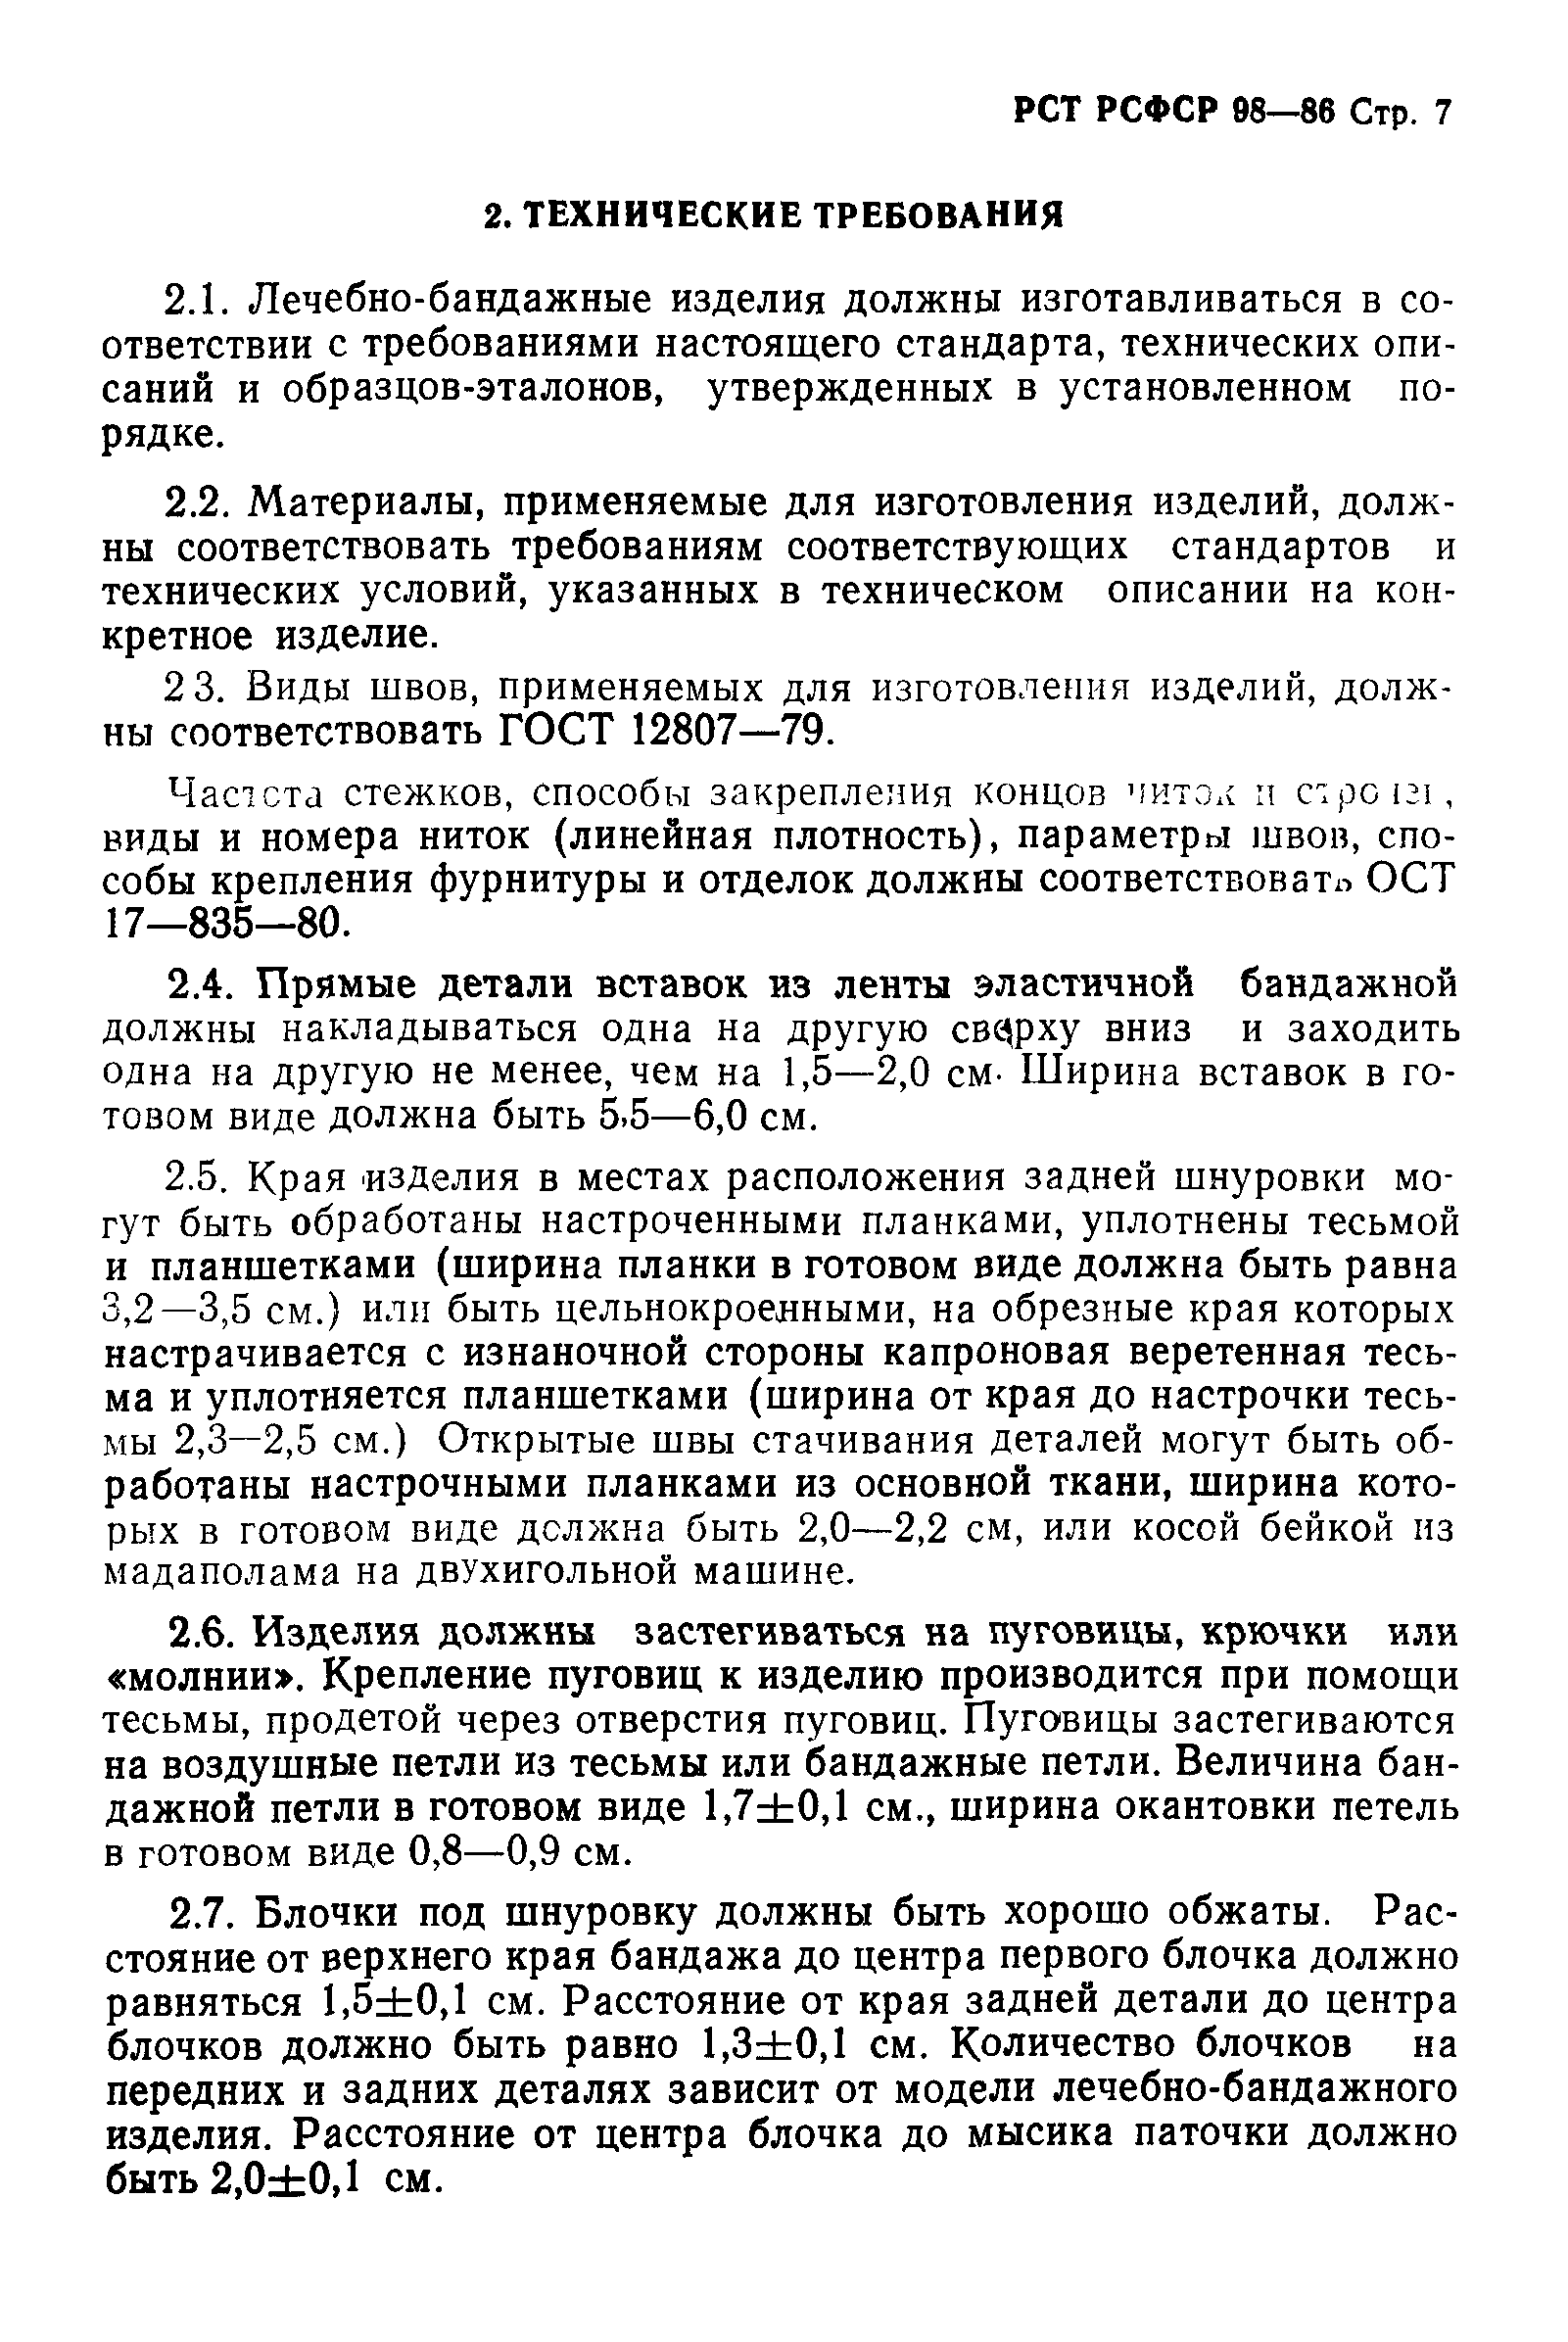 РСТ РСФСР 98-86